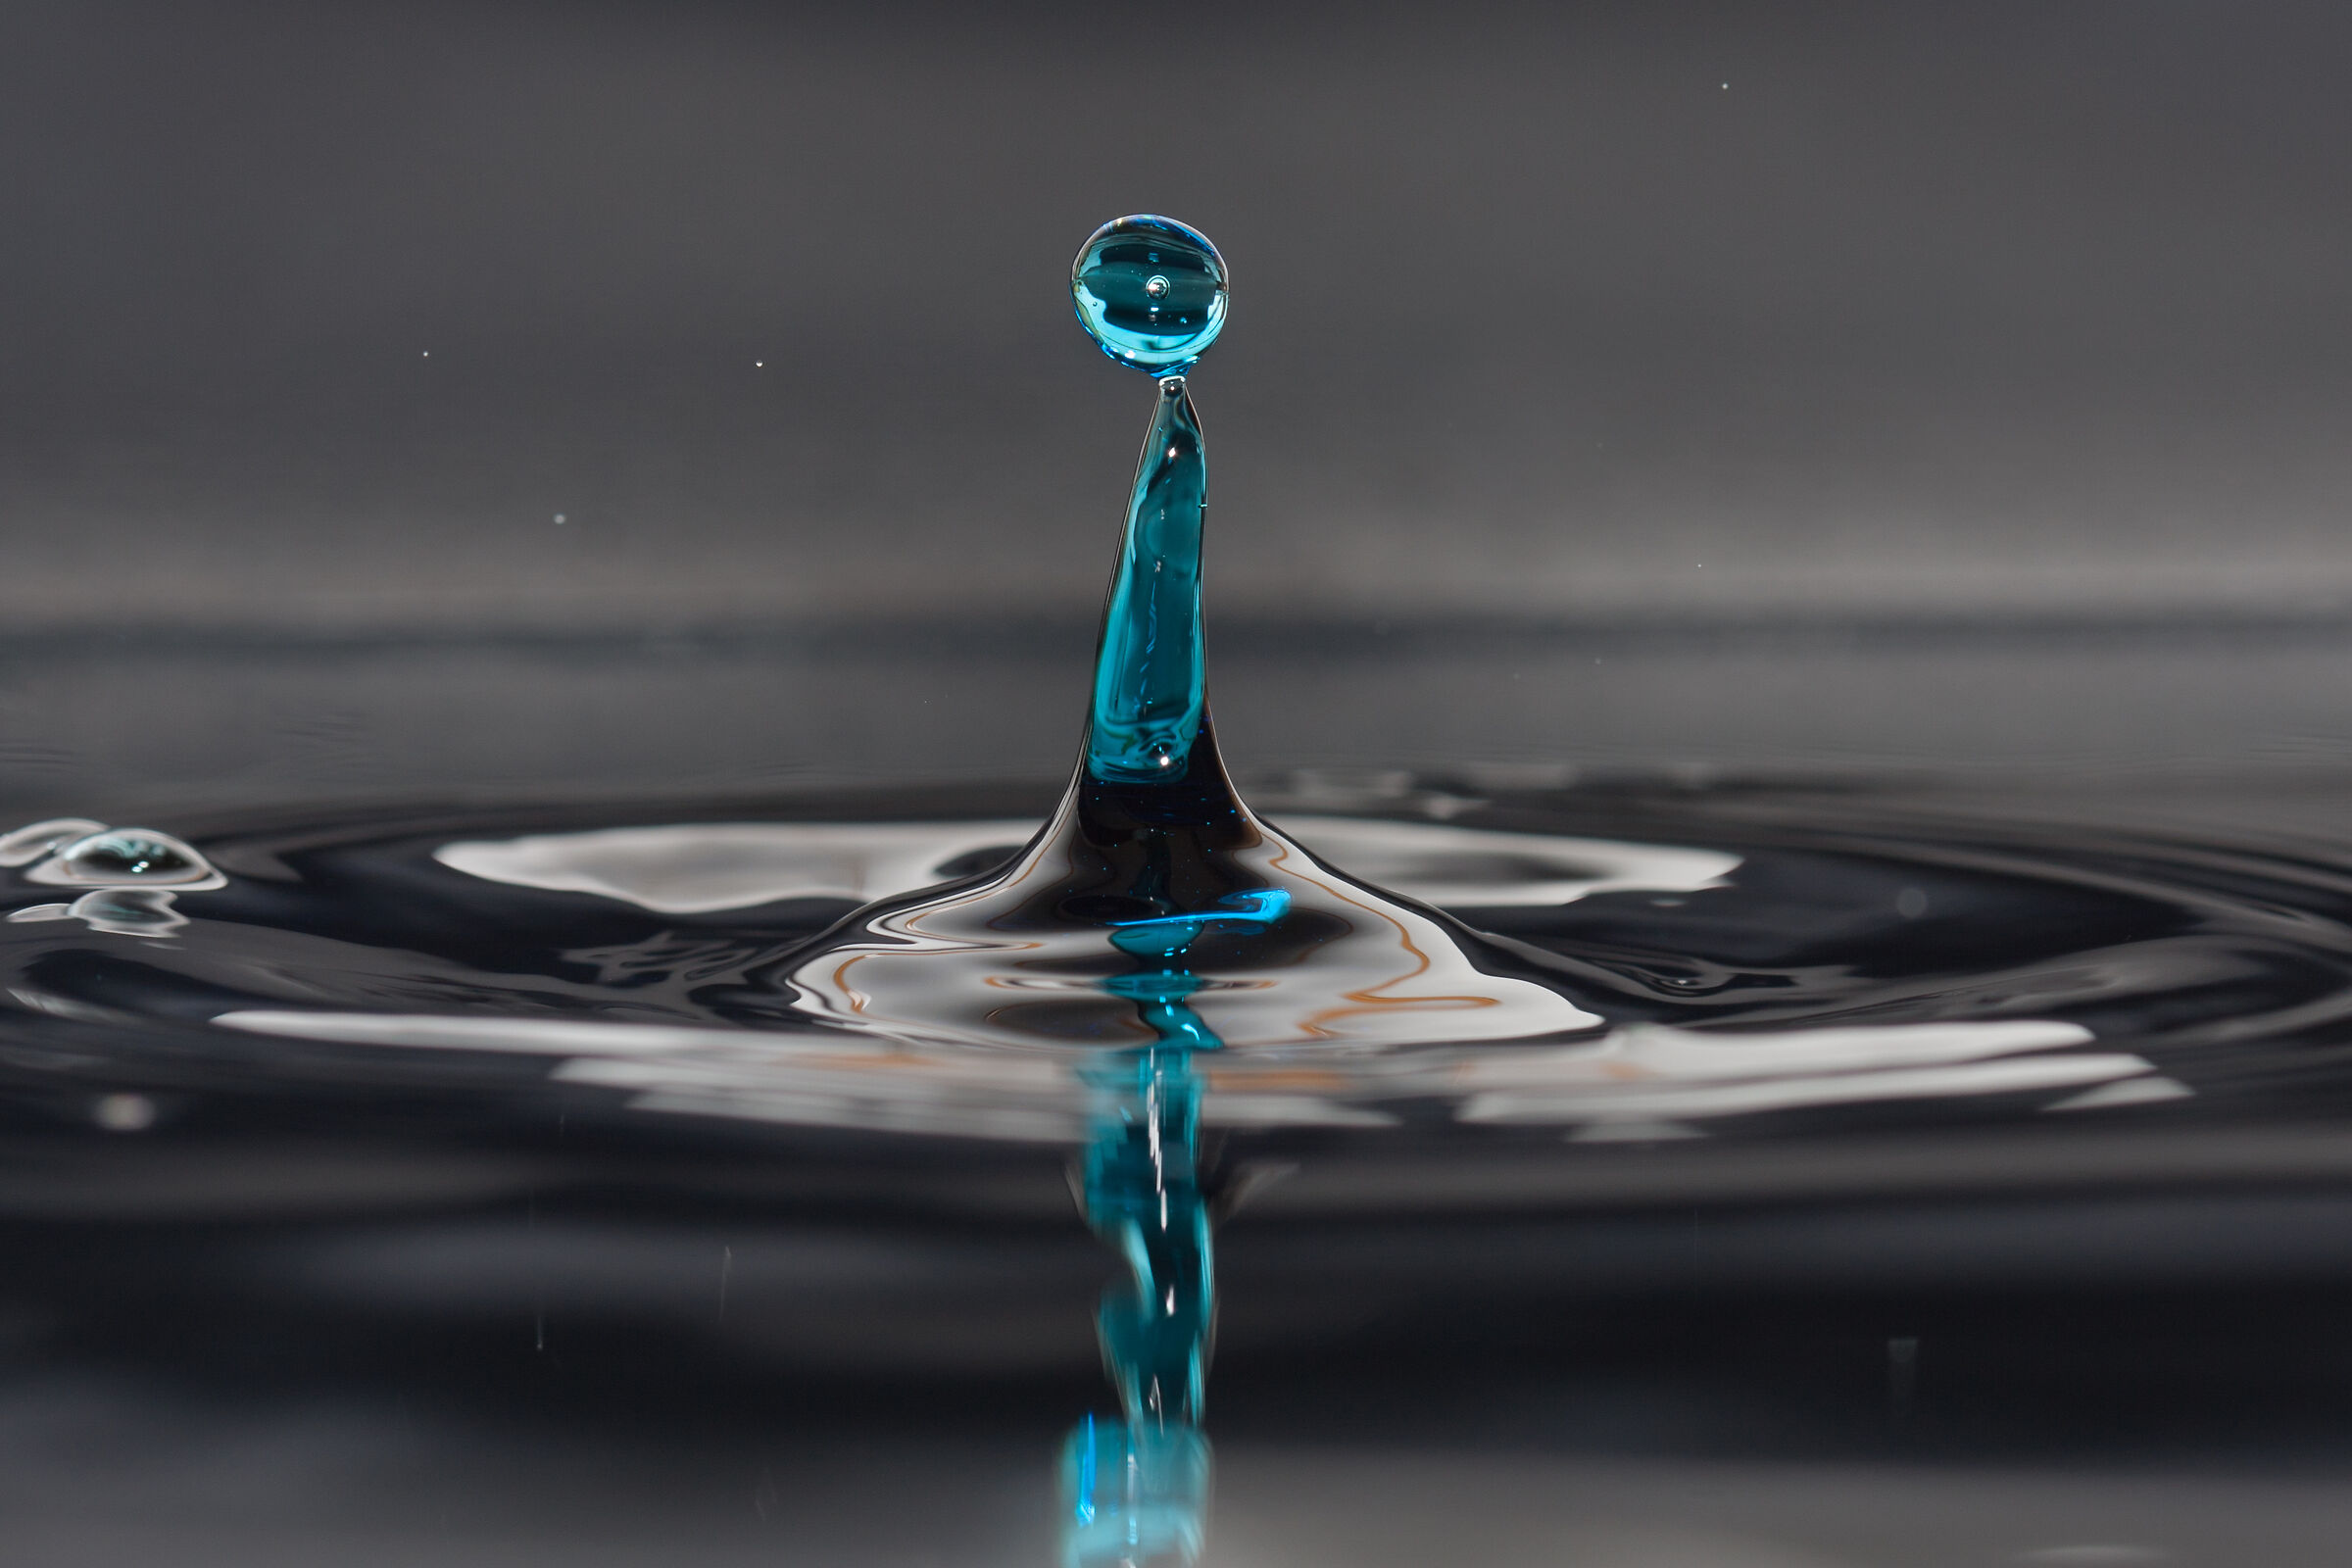 Blue Water Drop...